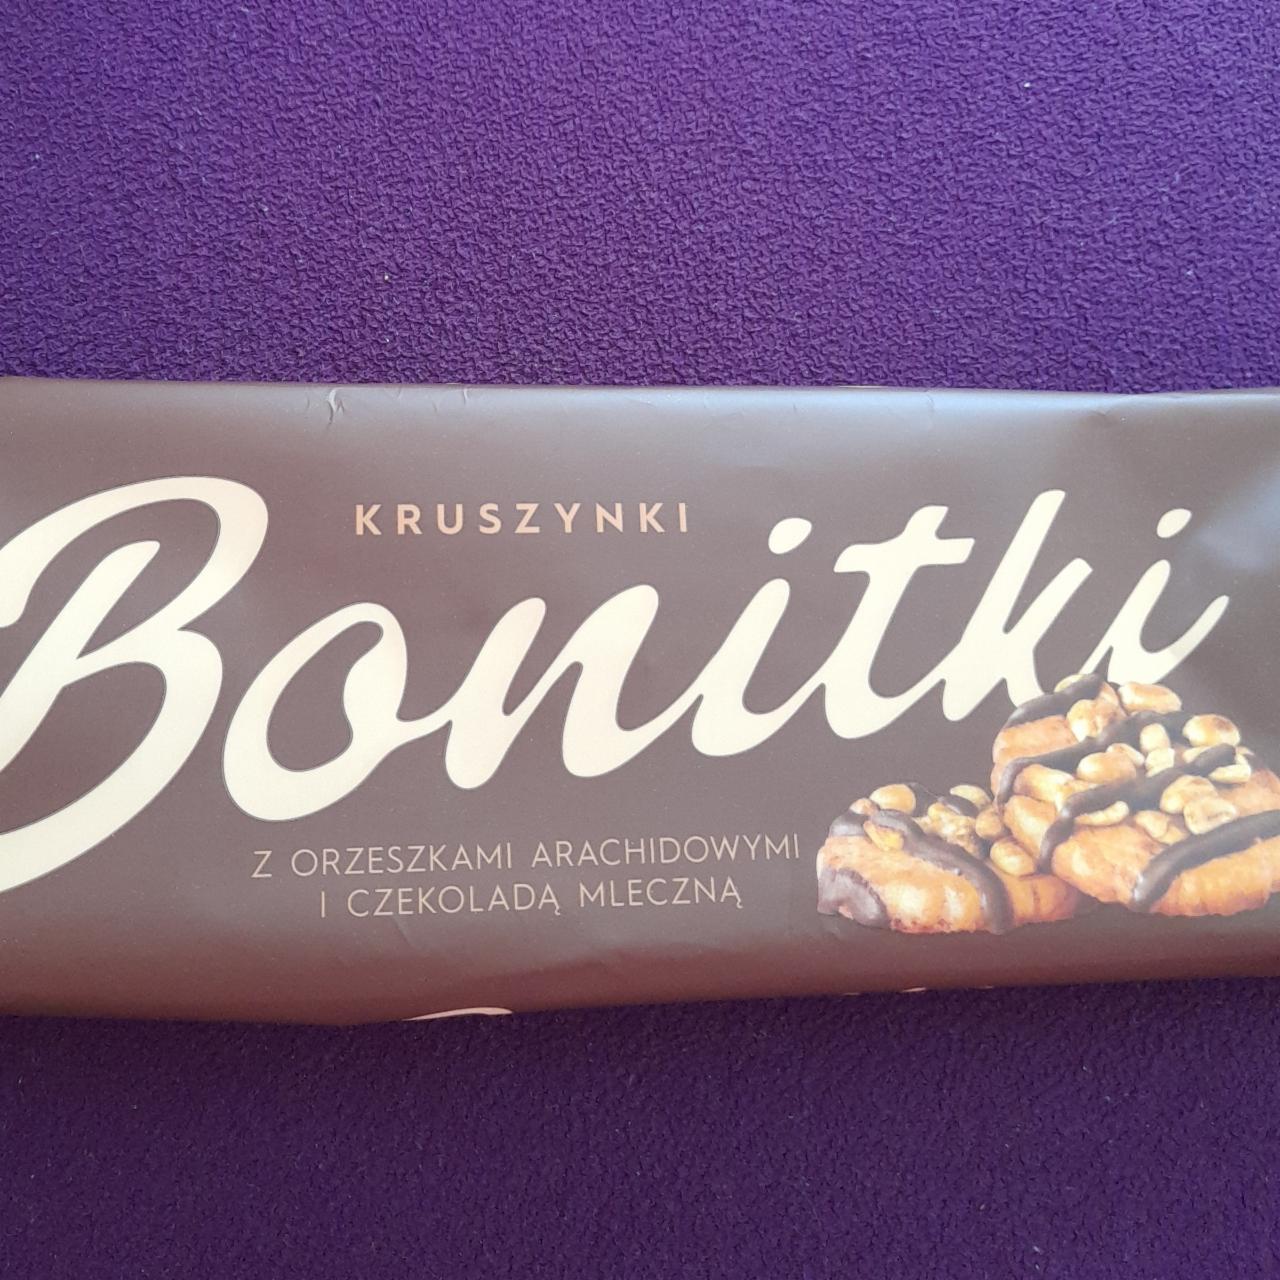 Zdjęcia - Bonitki s orzeszkami arachidowymi a czekolada mleczna